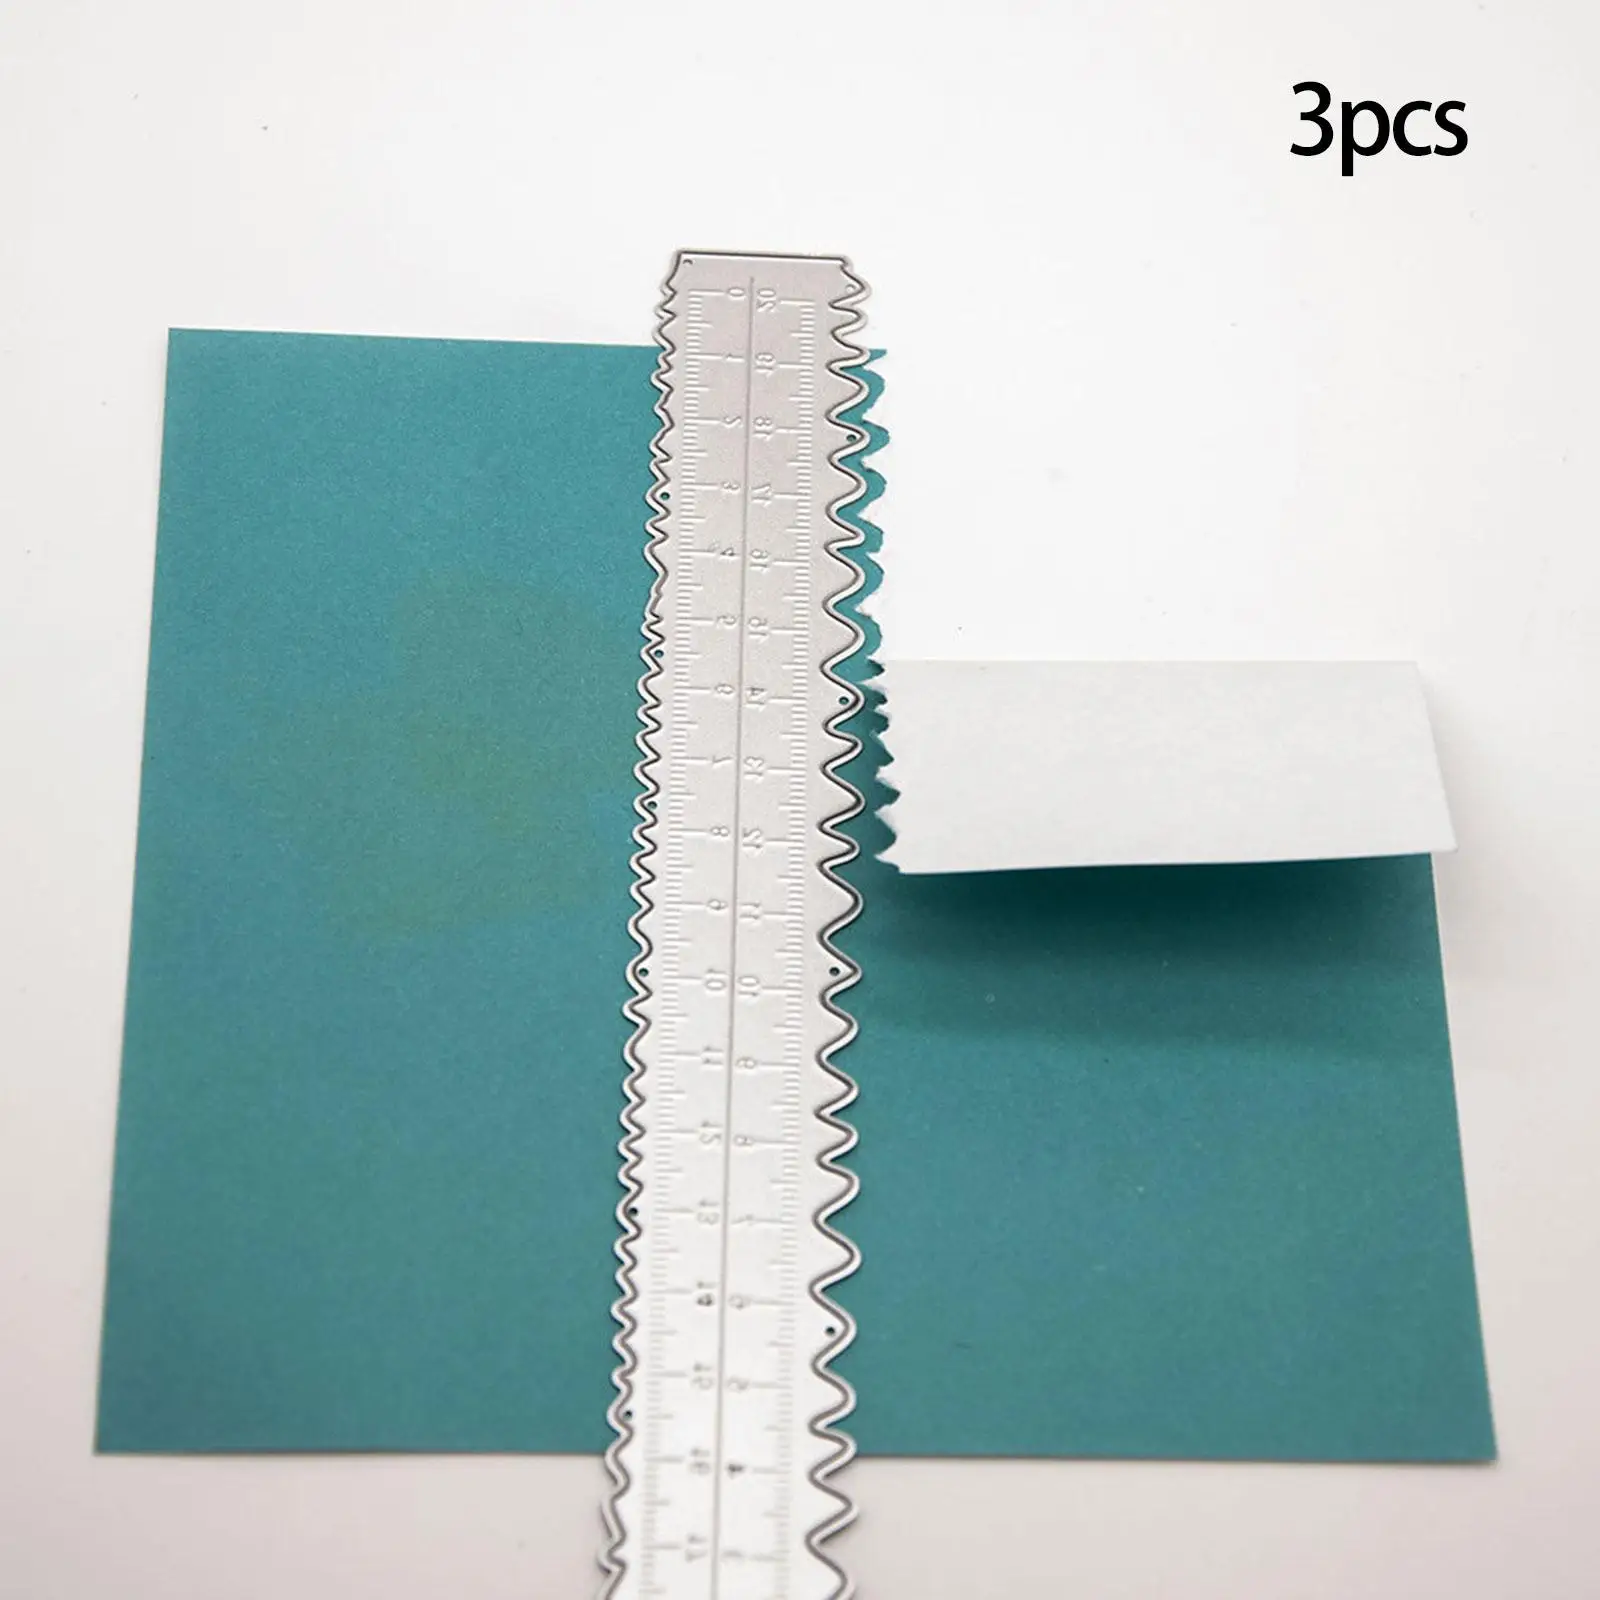 5 Pcs Deckle Edge Ruler Paper Tearing Ruler Craft Ruler for